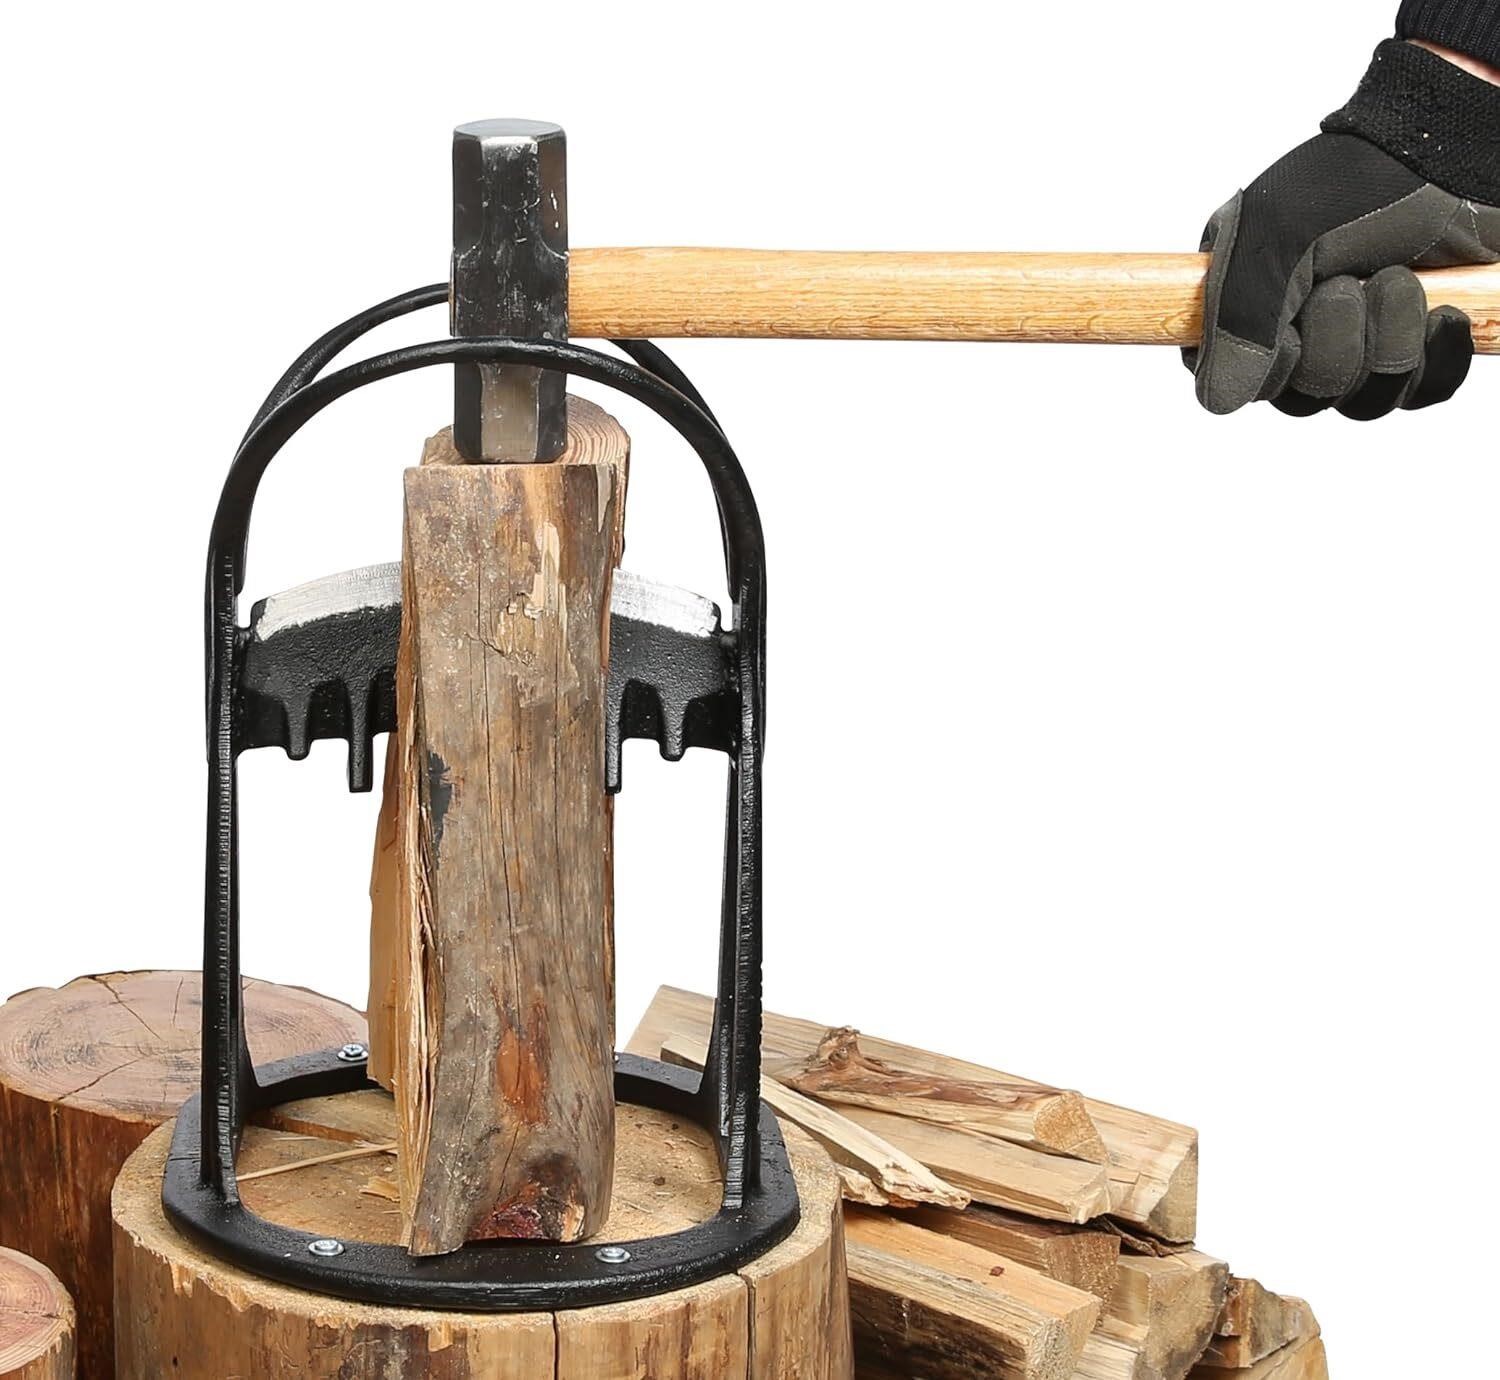 Kindling Wood Splitter, Full Body CAST Steel